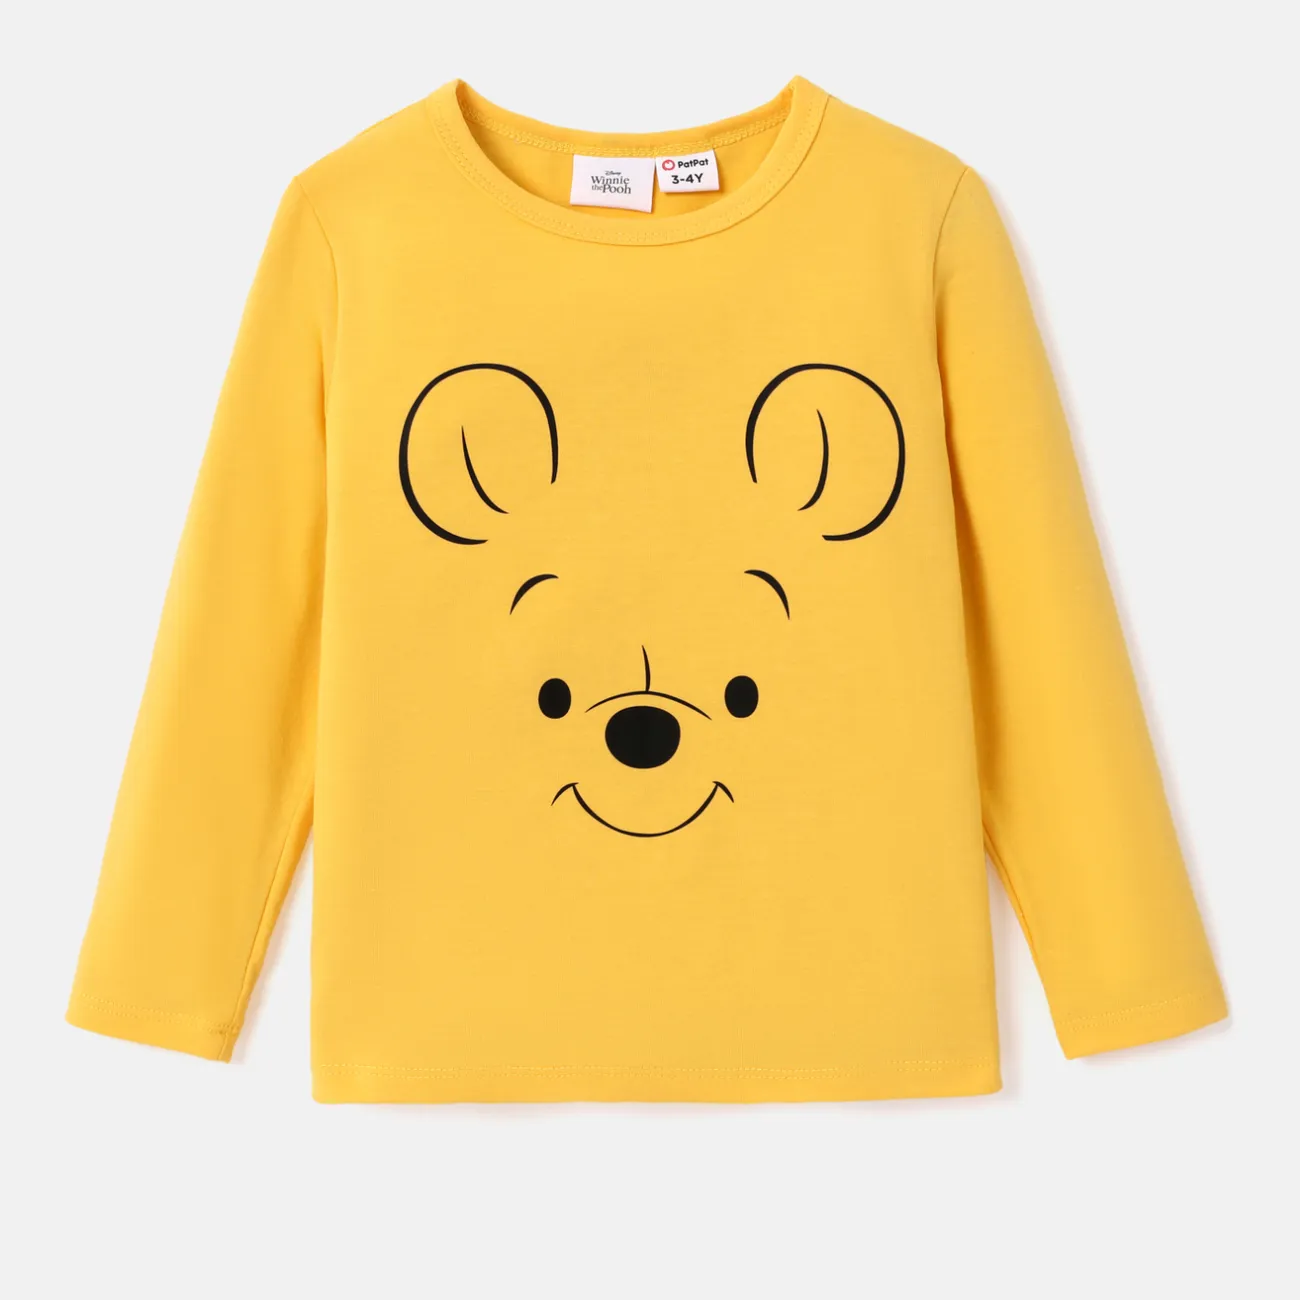 Disney Winnie the Pooh Kleinkinder Unisex Kindlich Langärmelig T-Shirts gelb big image 1